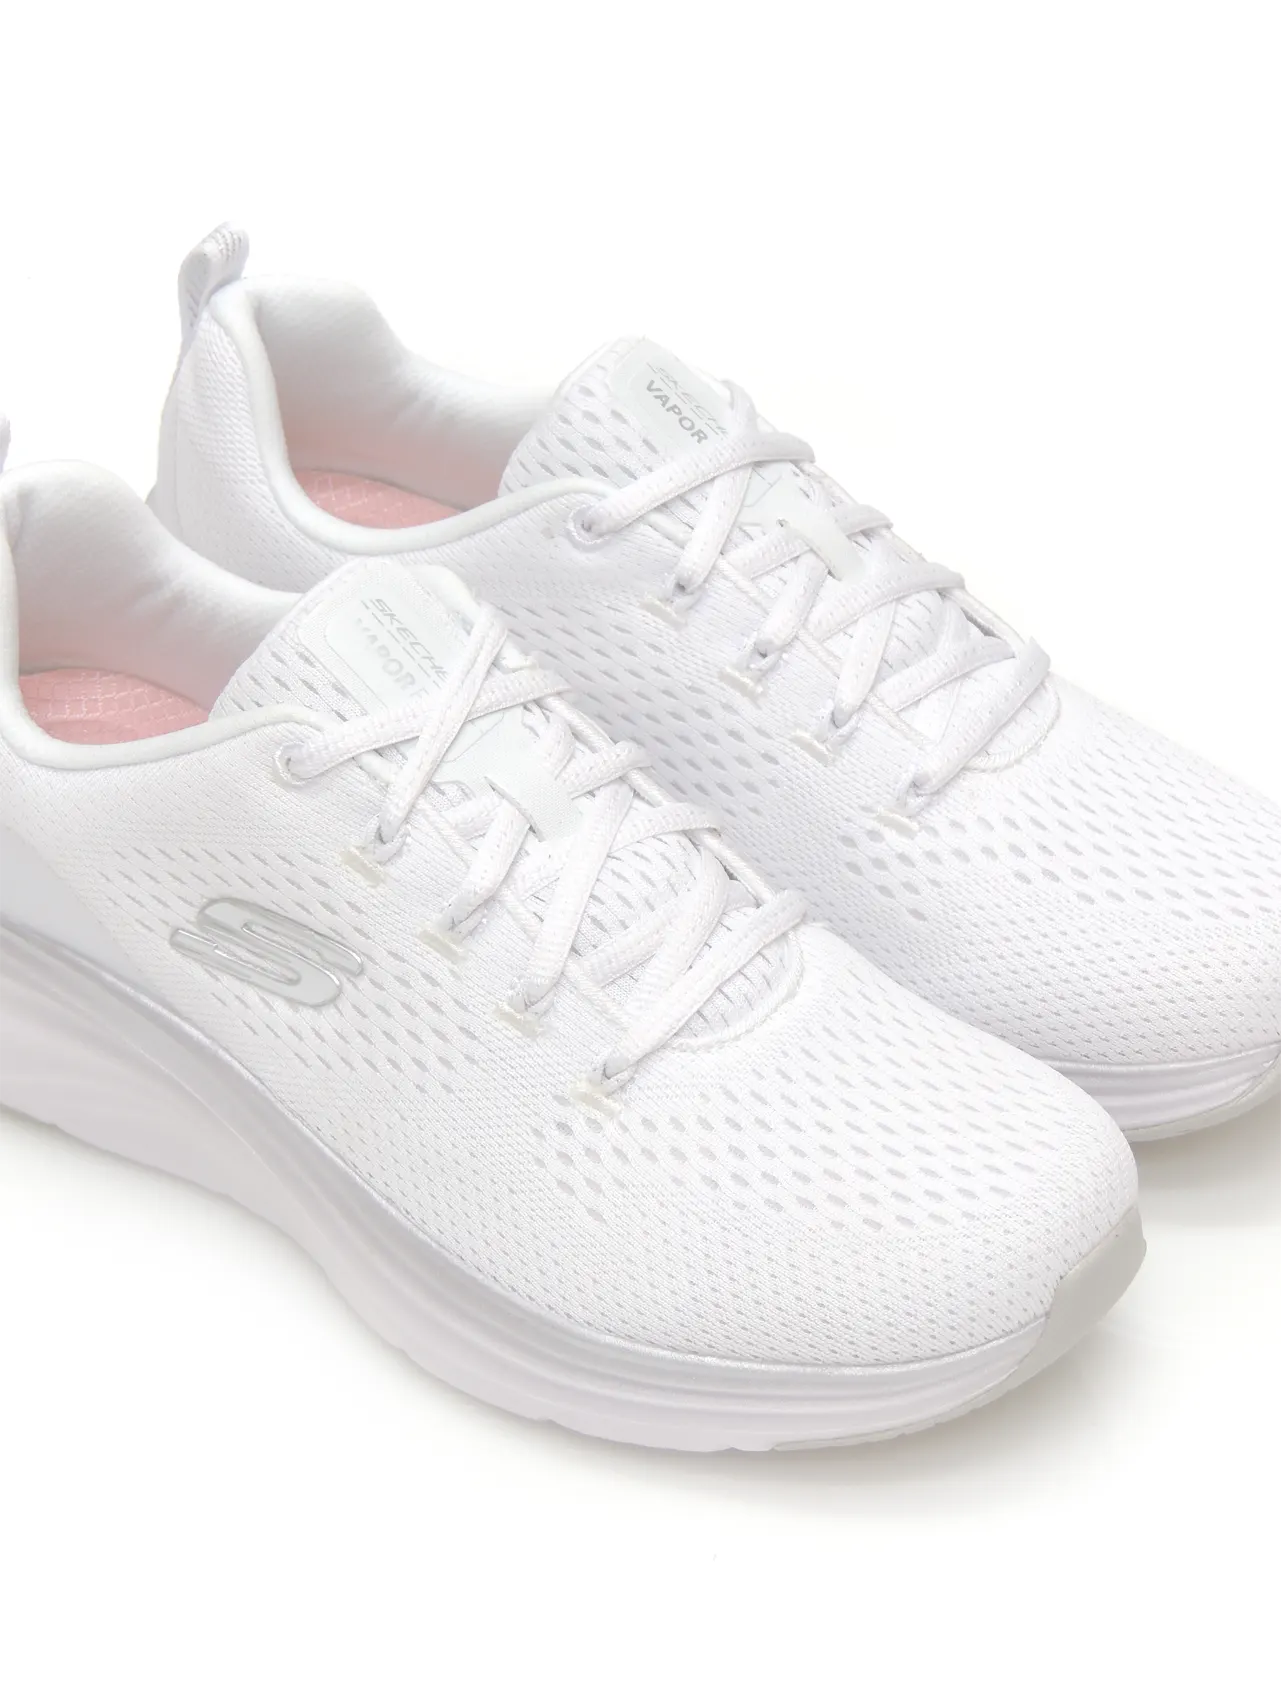 sneakers--skechers-150025-textil-blanco